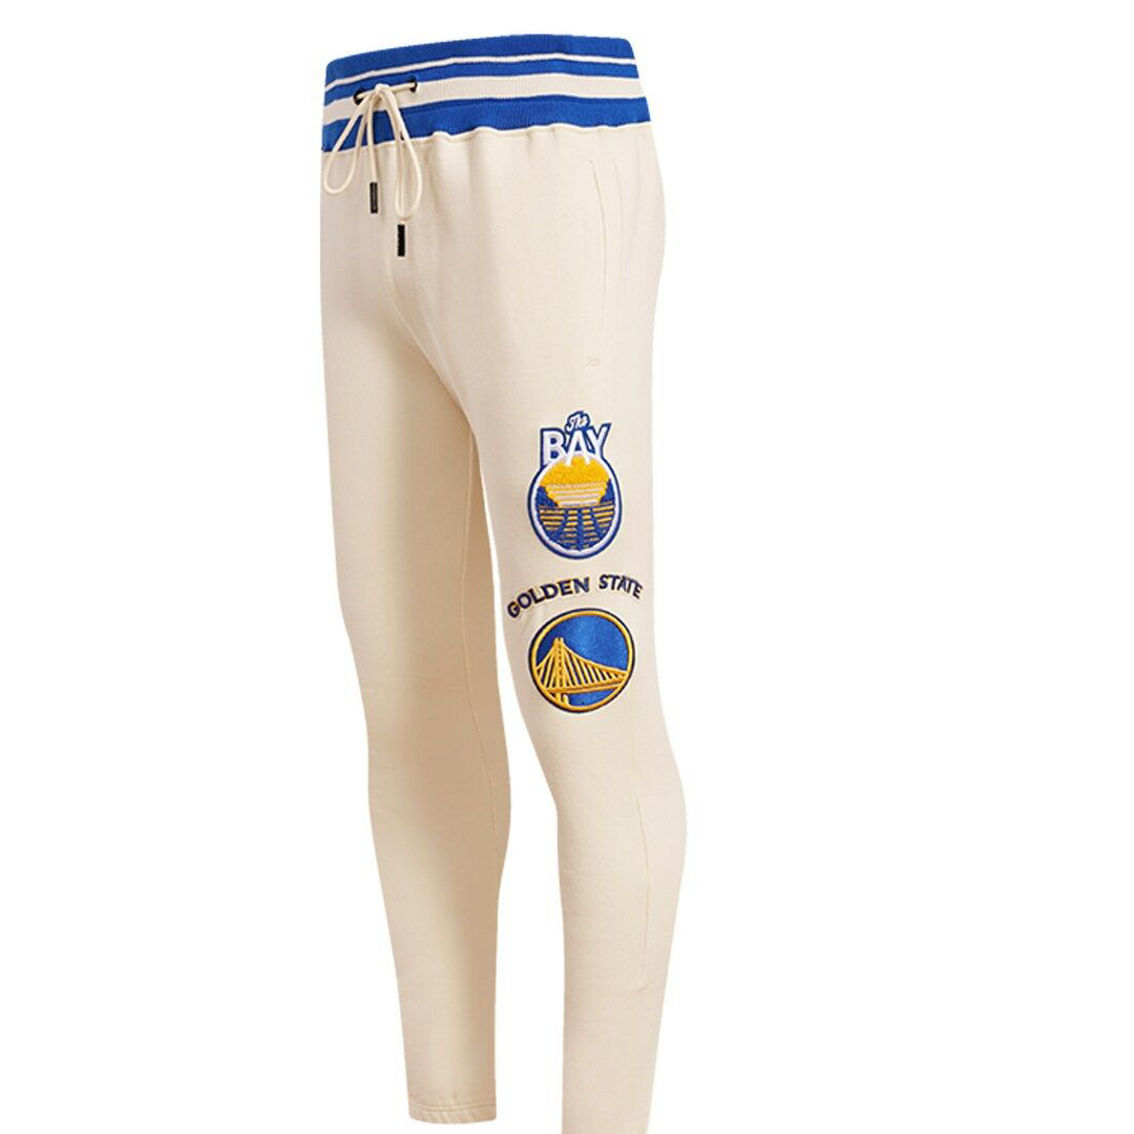 Pro Standard Men's Cream Golden State Warriors Retro Classic Fleece Sweatpants - Image 3 of 4